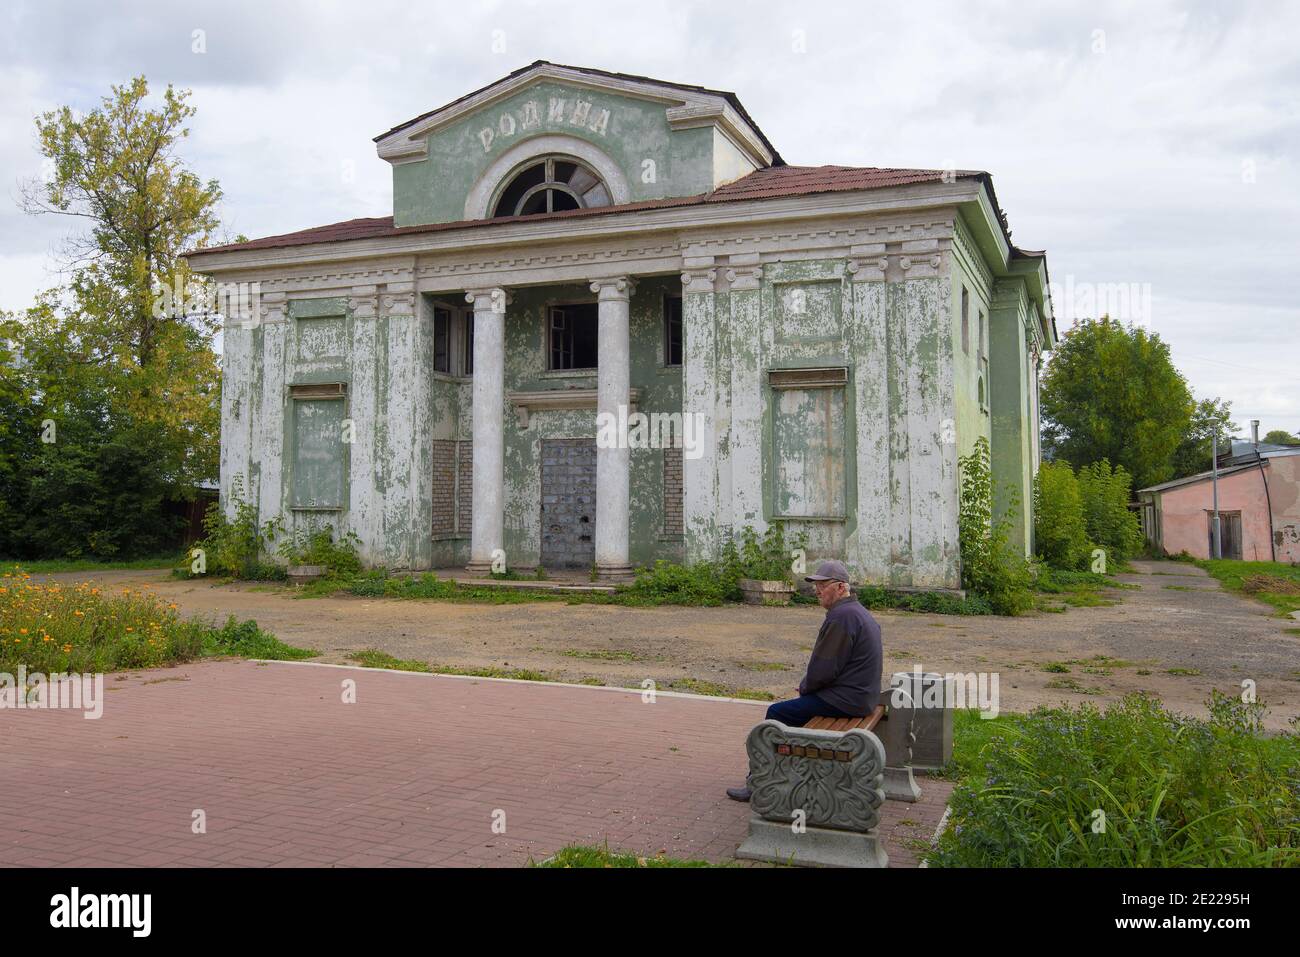 KOTELNICH, Russland - 15. SEPTEMBER 2018: Alter Mann sitzt auf einer Bank in der Nähe der geschlossenen Kino 'Rodina' Stockfoto